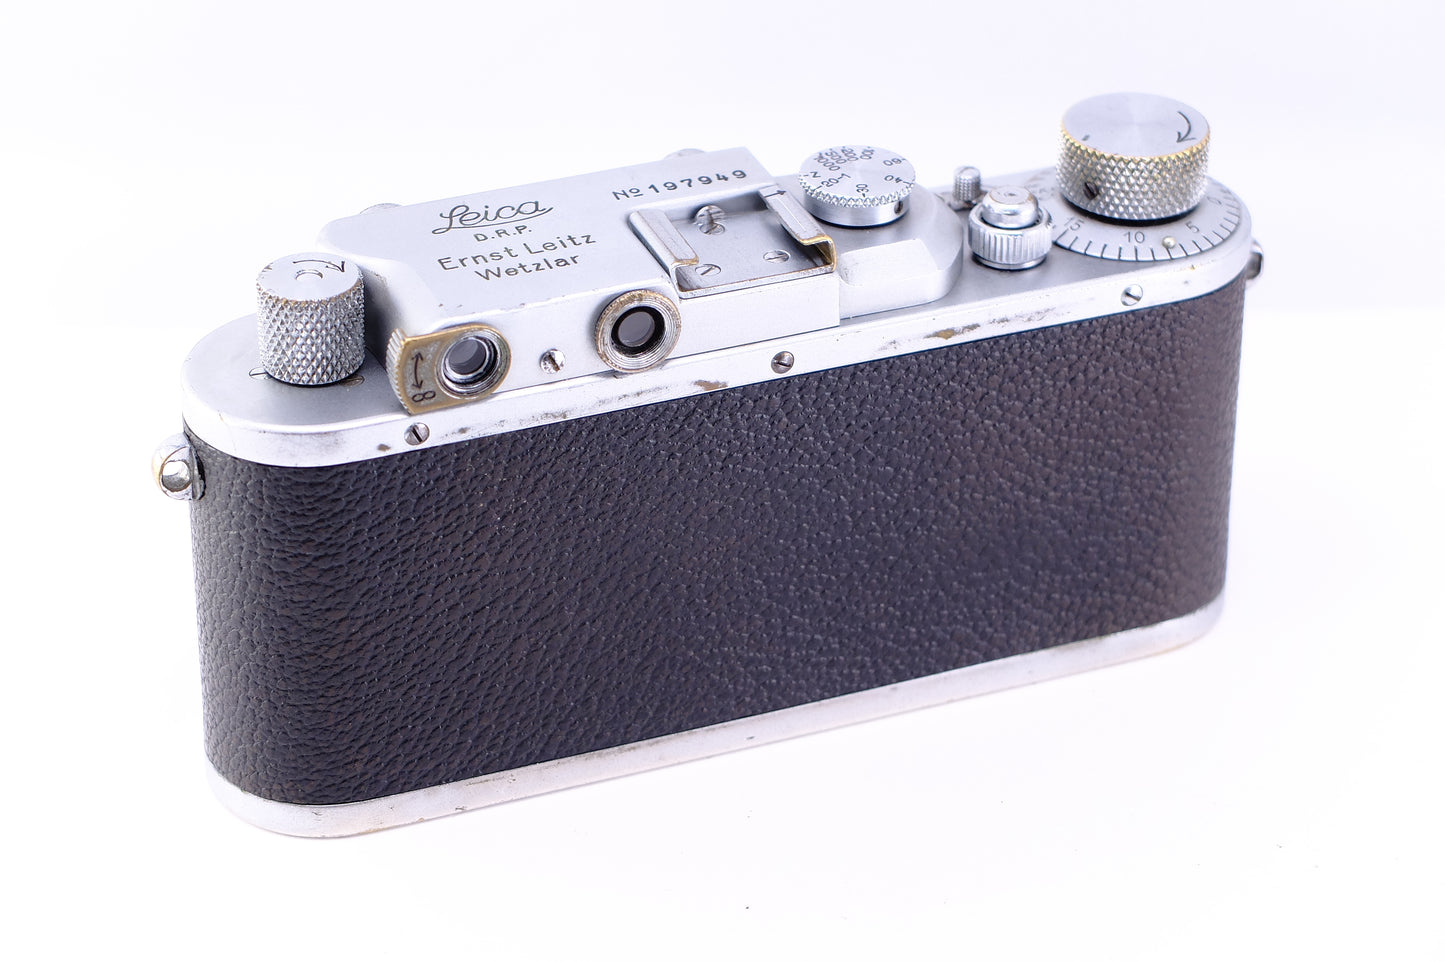 Leica IIIa (1936年製)[1255681142119]